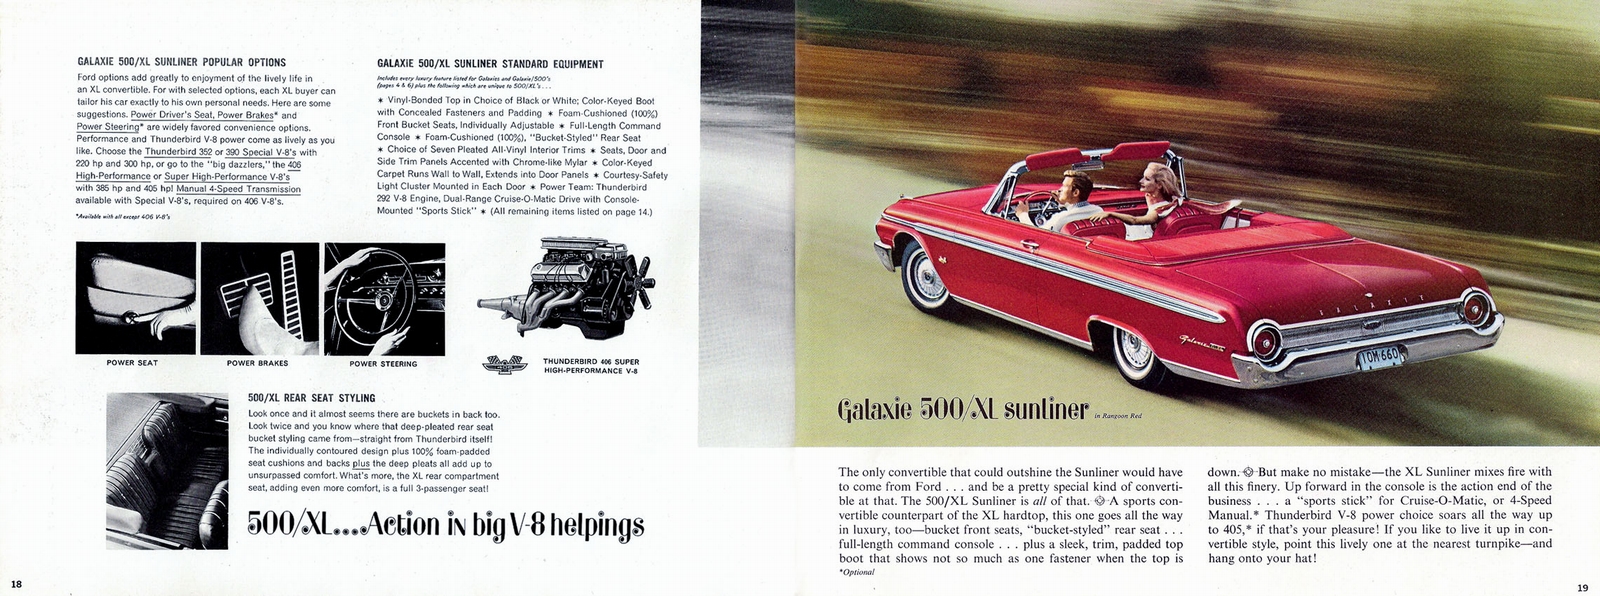 n_1962 Ford Full Size Prestige (Rev)-18-19.jpg